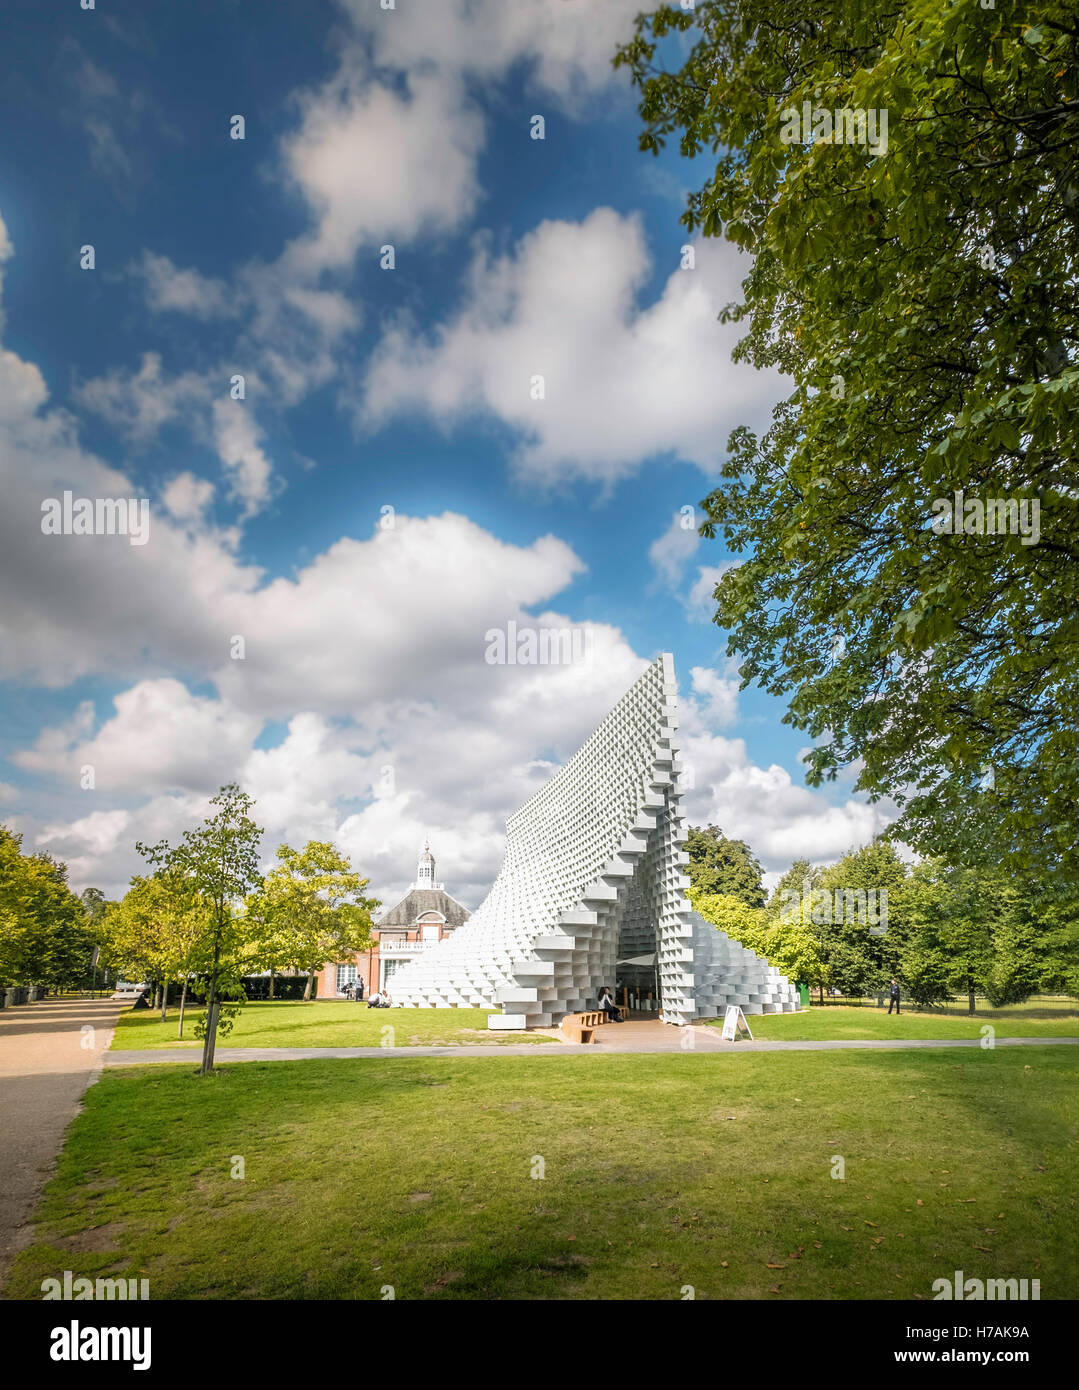 La serpentine Pavilion 2016, Kensington Gardens, London, UK. Banque D'Images